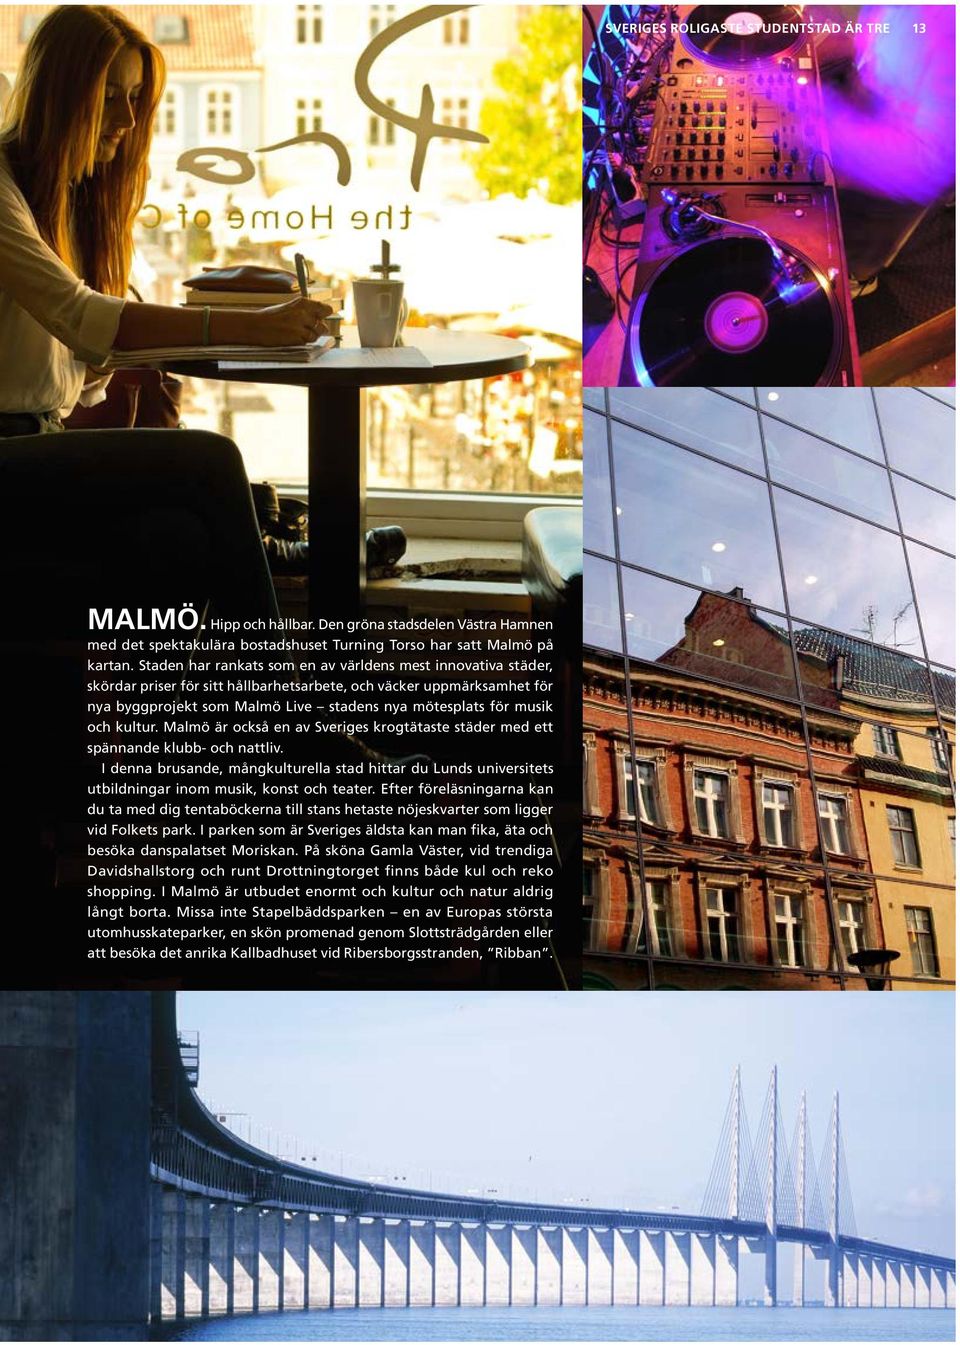 och kultur. Malmö är också en av Sveriges krogtätaste städer med ett spännande klubb- och nattliv.